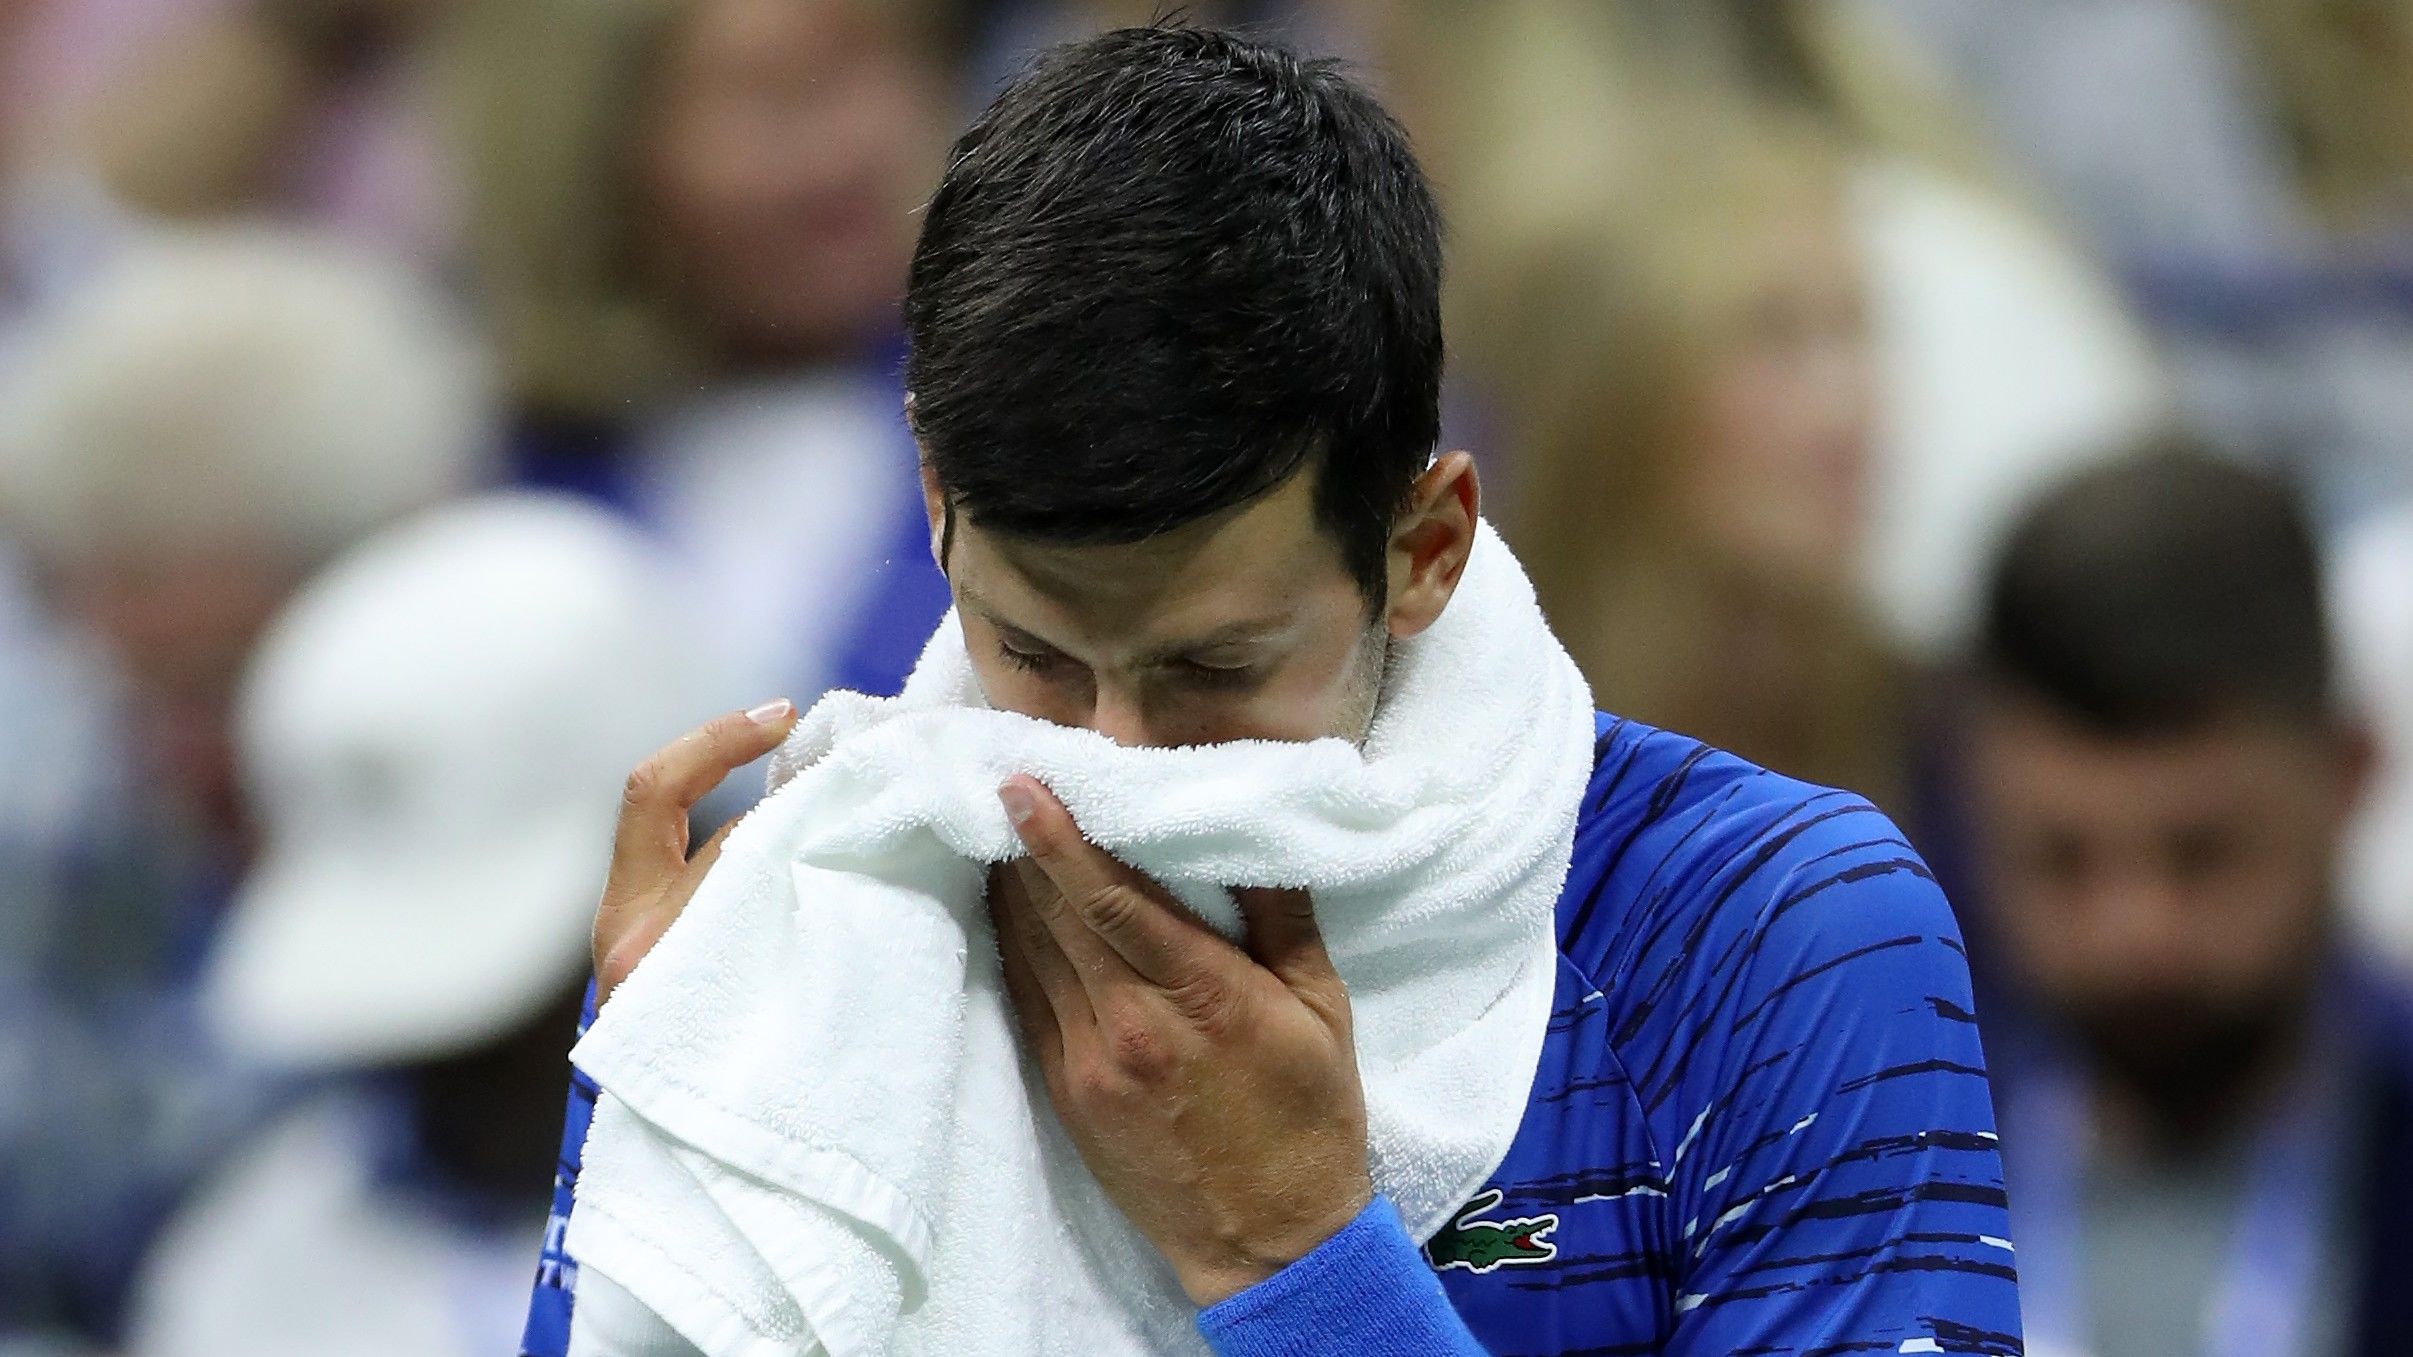 Djokovic feladta a US Opent, a közönség kifütyülte